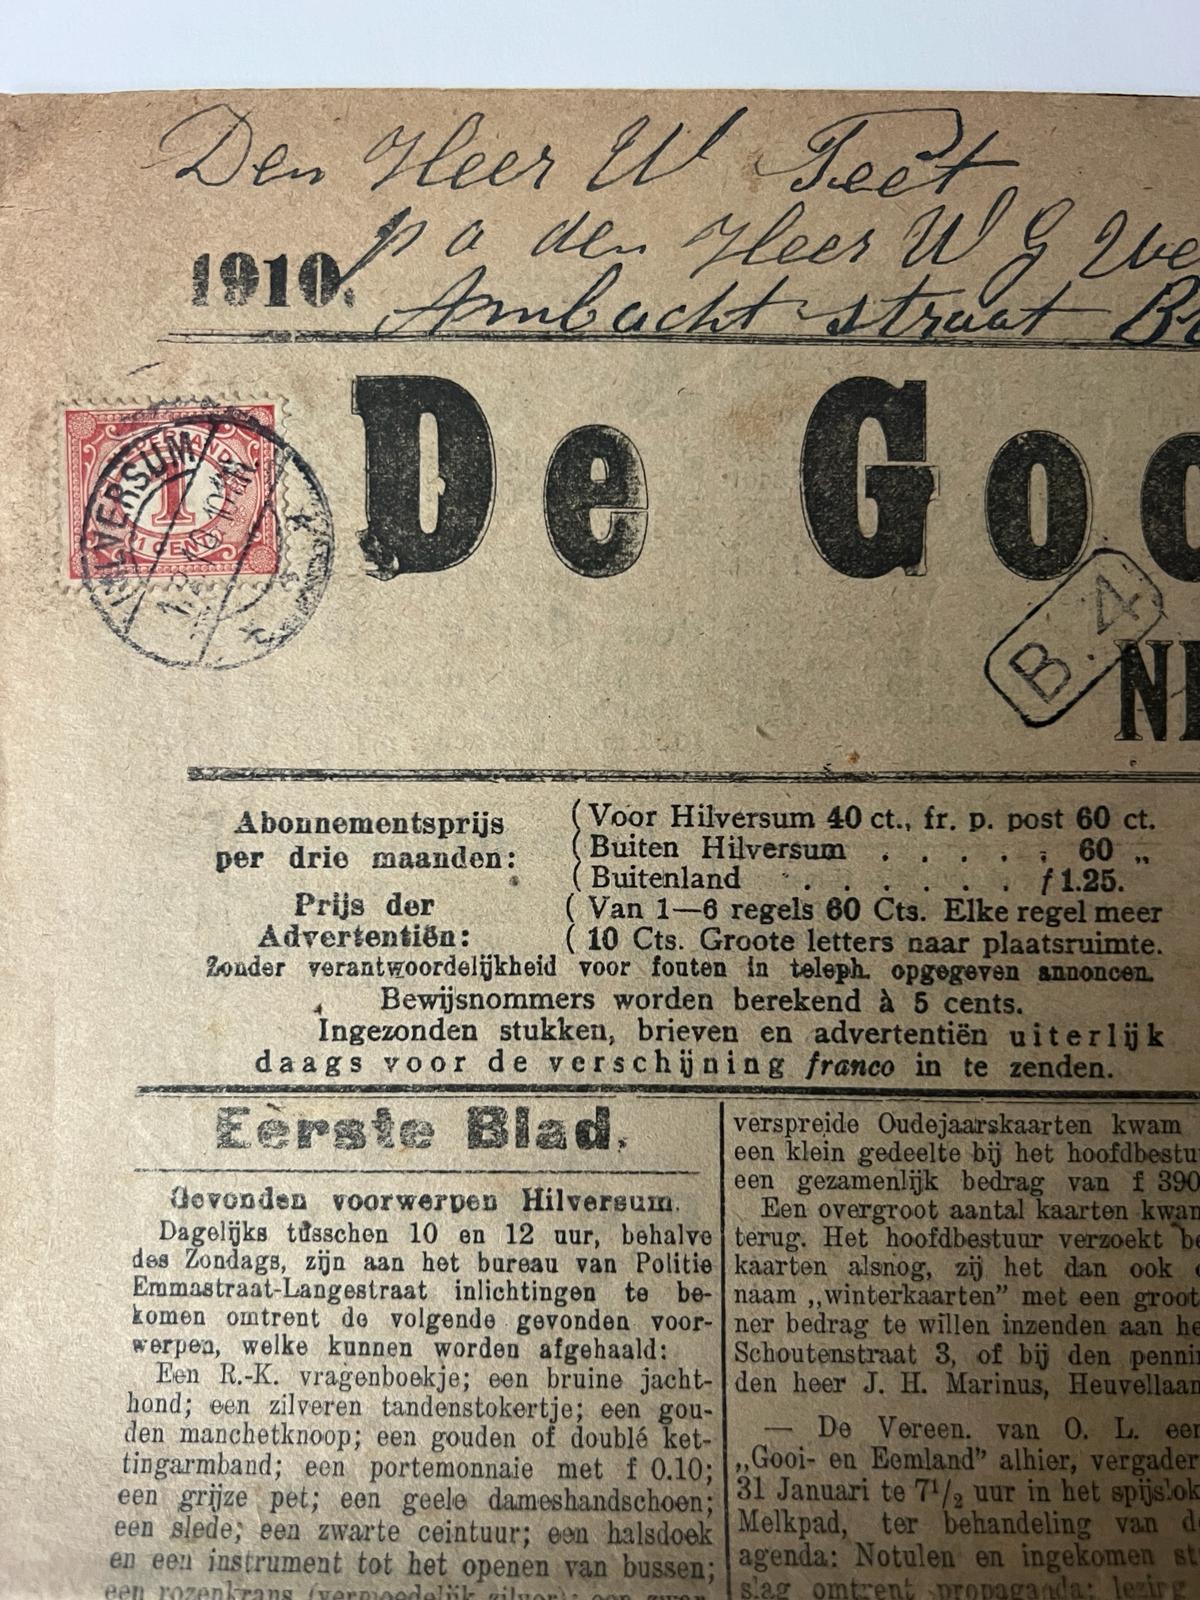 [Originele krant] - Ephemere newspaper 1910 | De Gooi- en Eemlander nieuws- en advertentieblad 39e jaargang, nr 8, zaterdag 29 januari 1910, 4 pp. With stamp of 1 cent, Nederland.